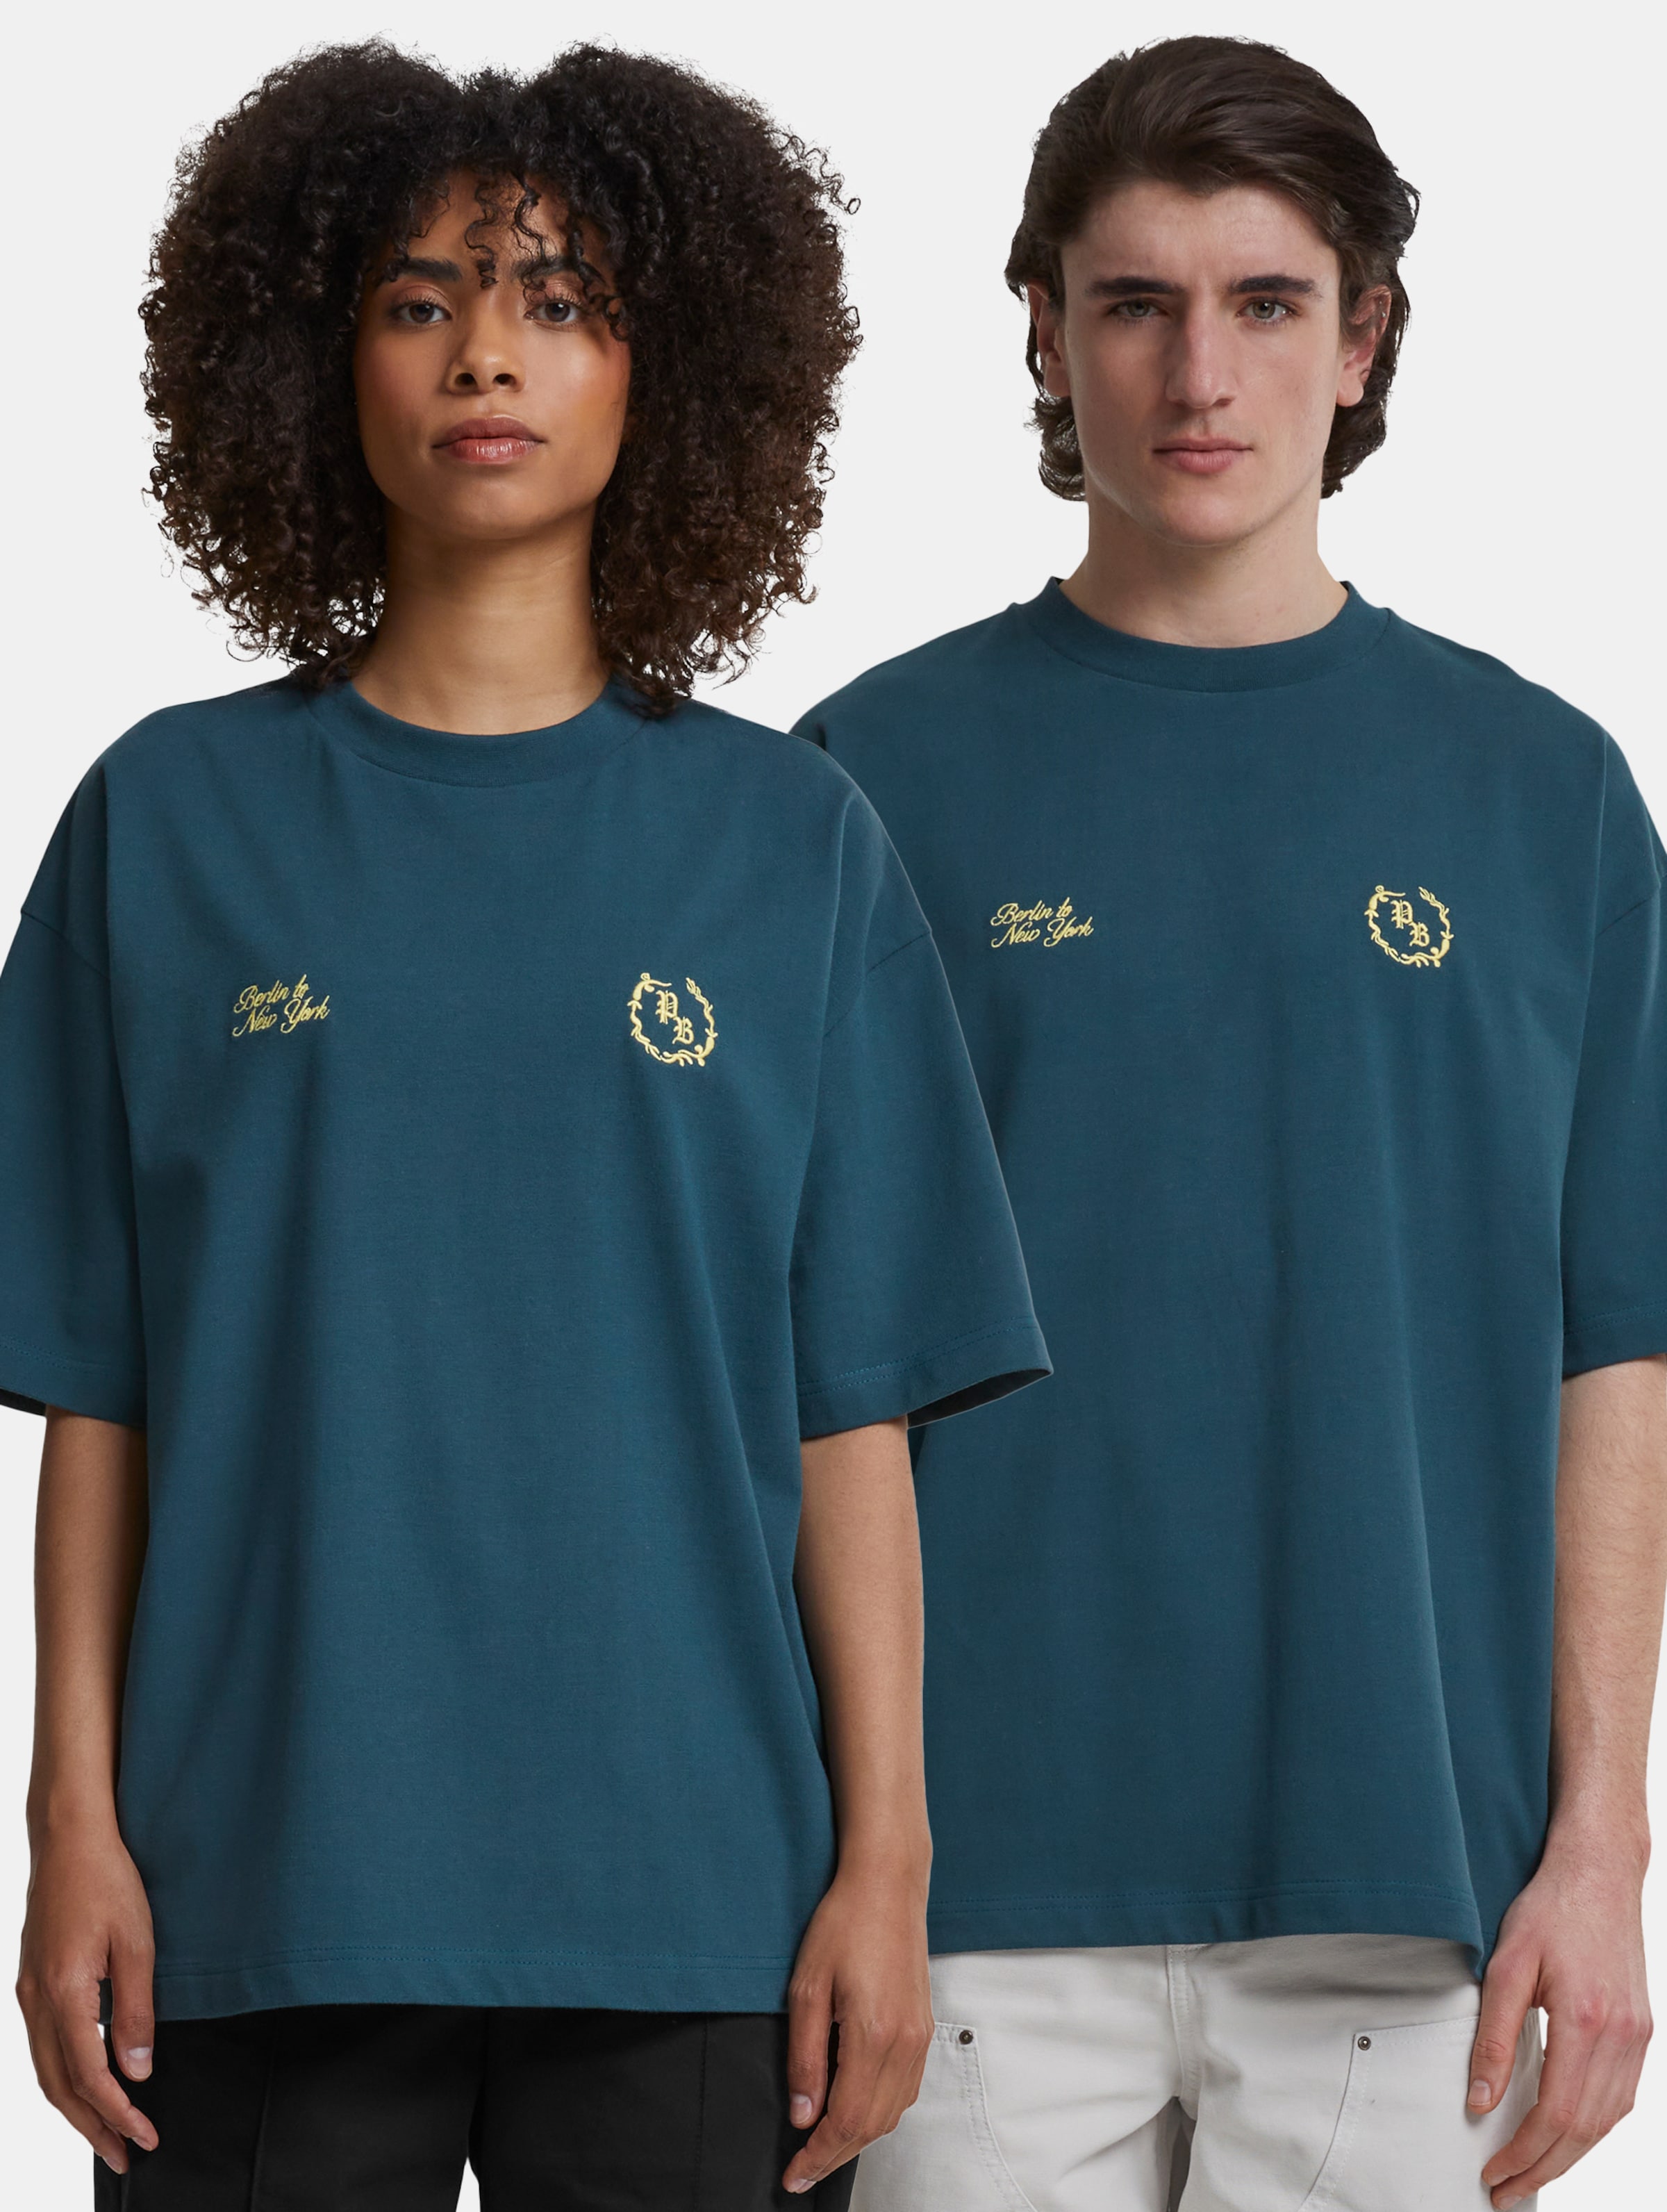 Prohibited Logo T Shirt Frauen,Männer,Unisex op kleur groen, Maat XS